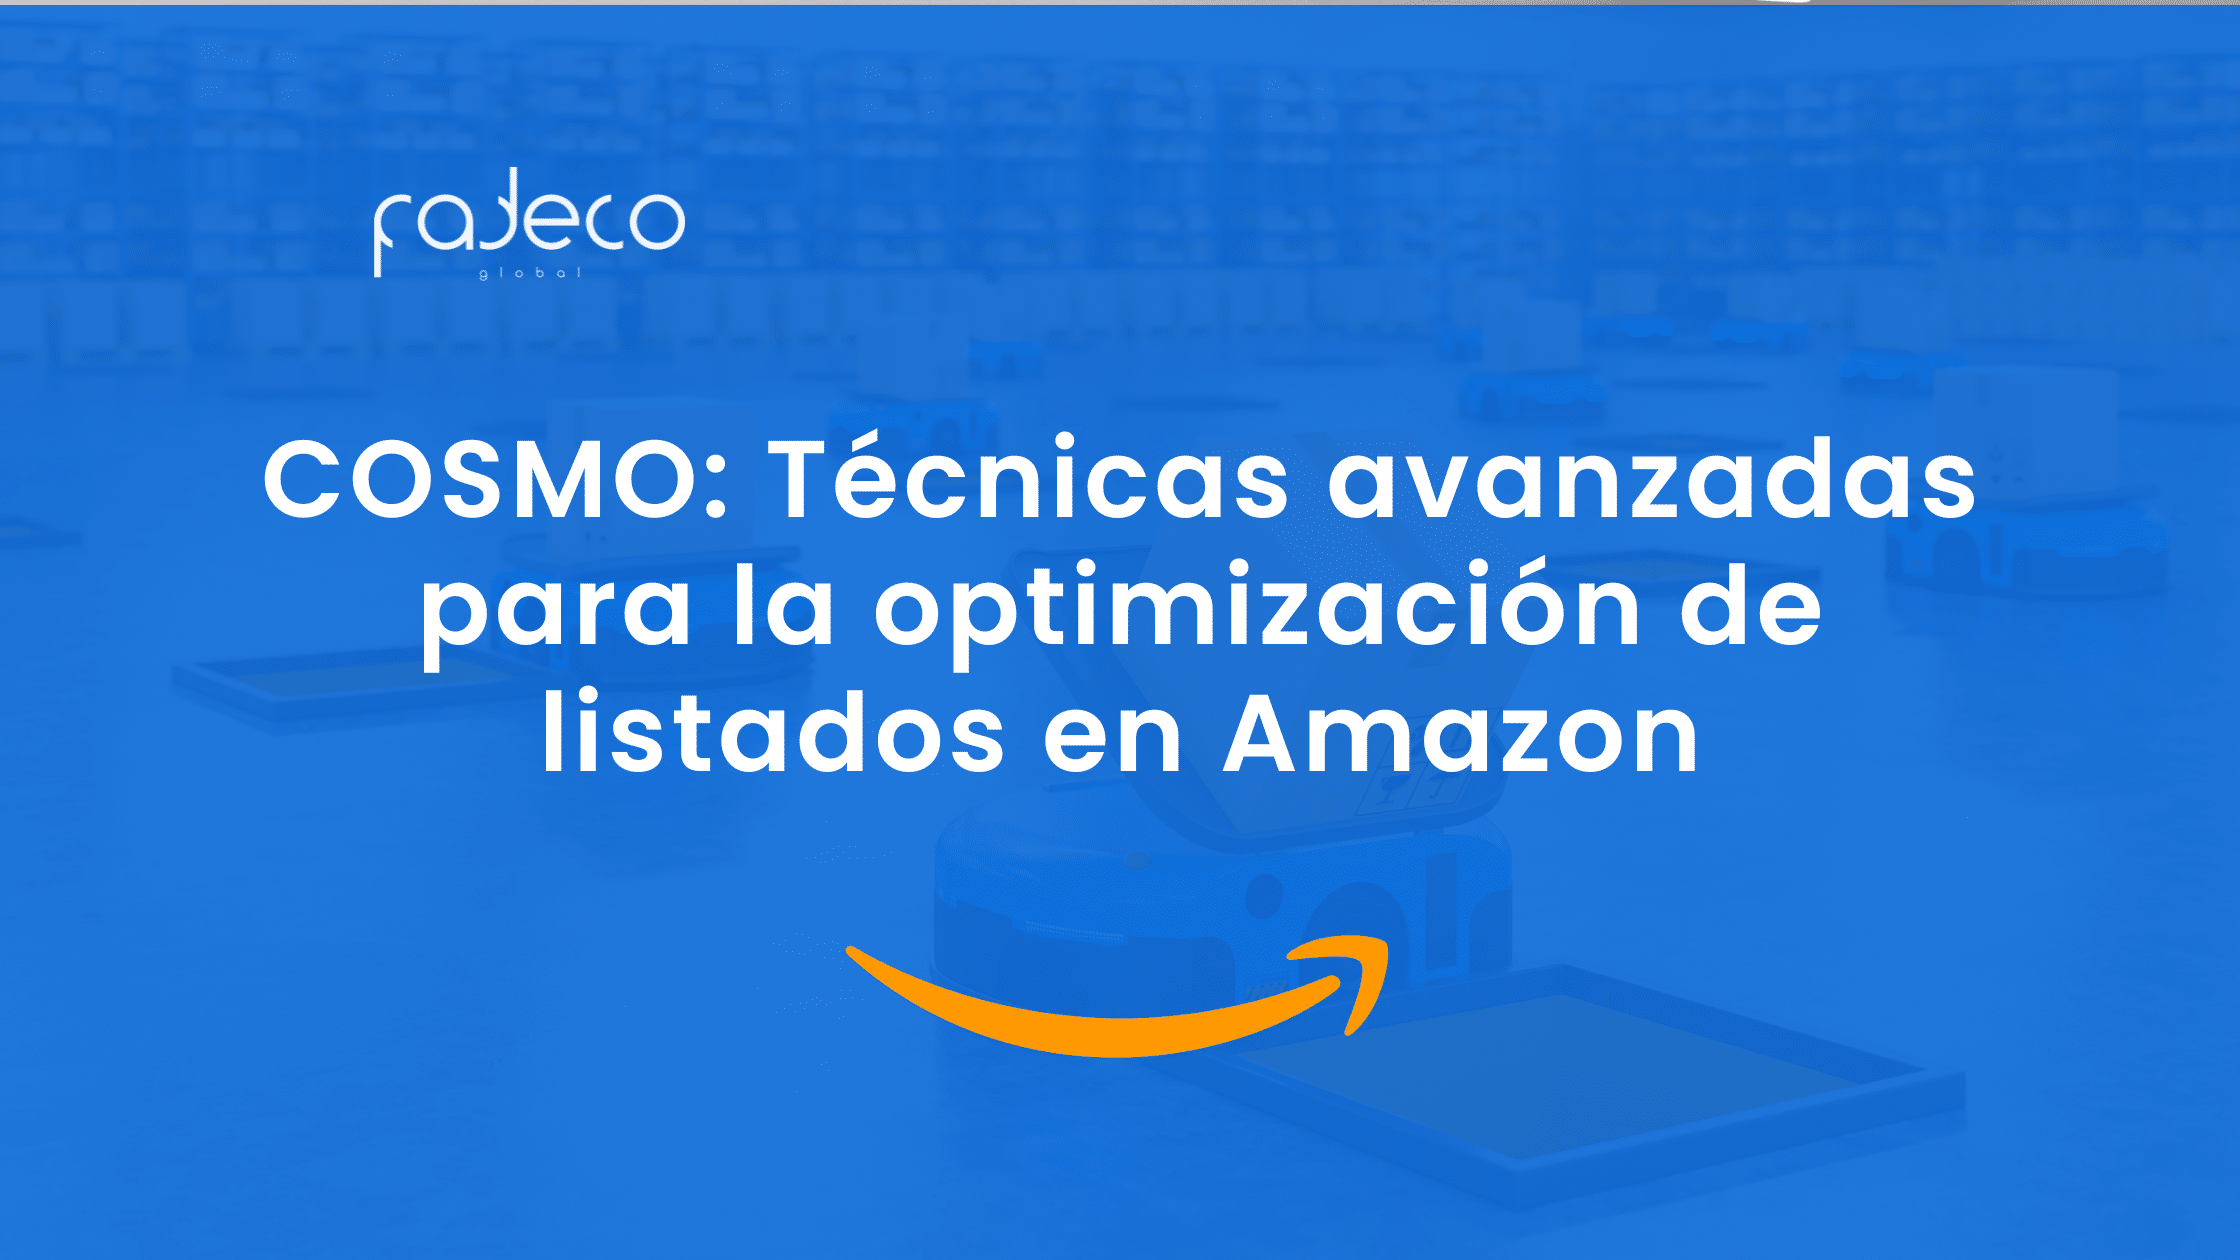 COSMO: Técnicas avanzadas para la optimización de listados en Amazon